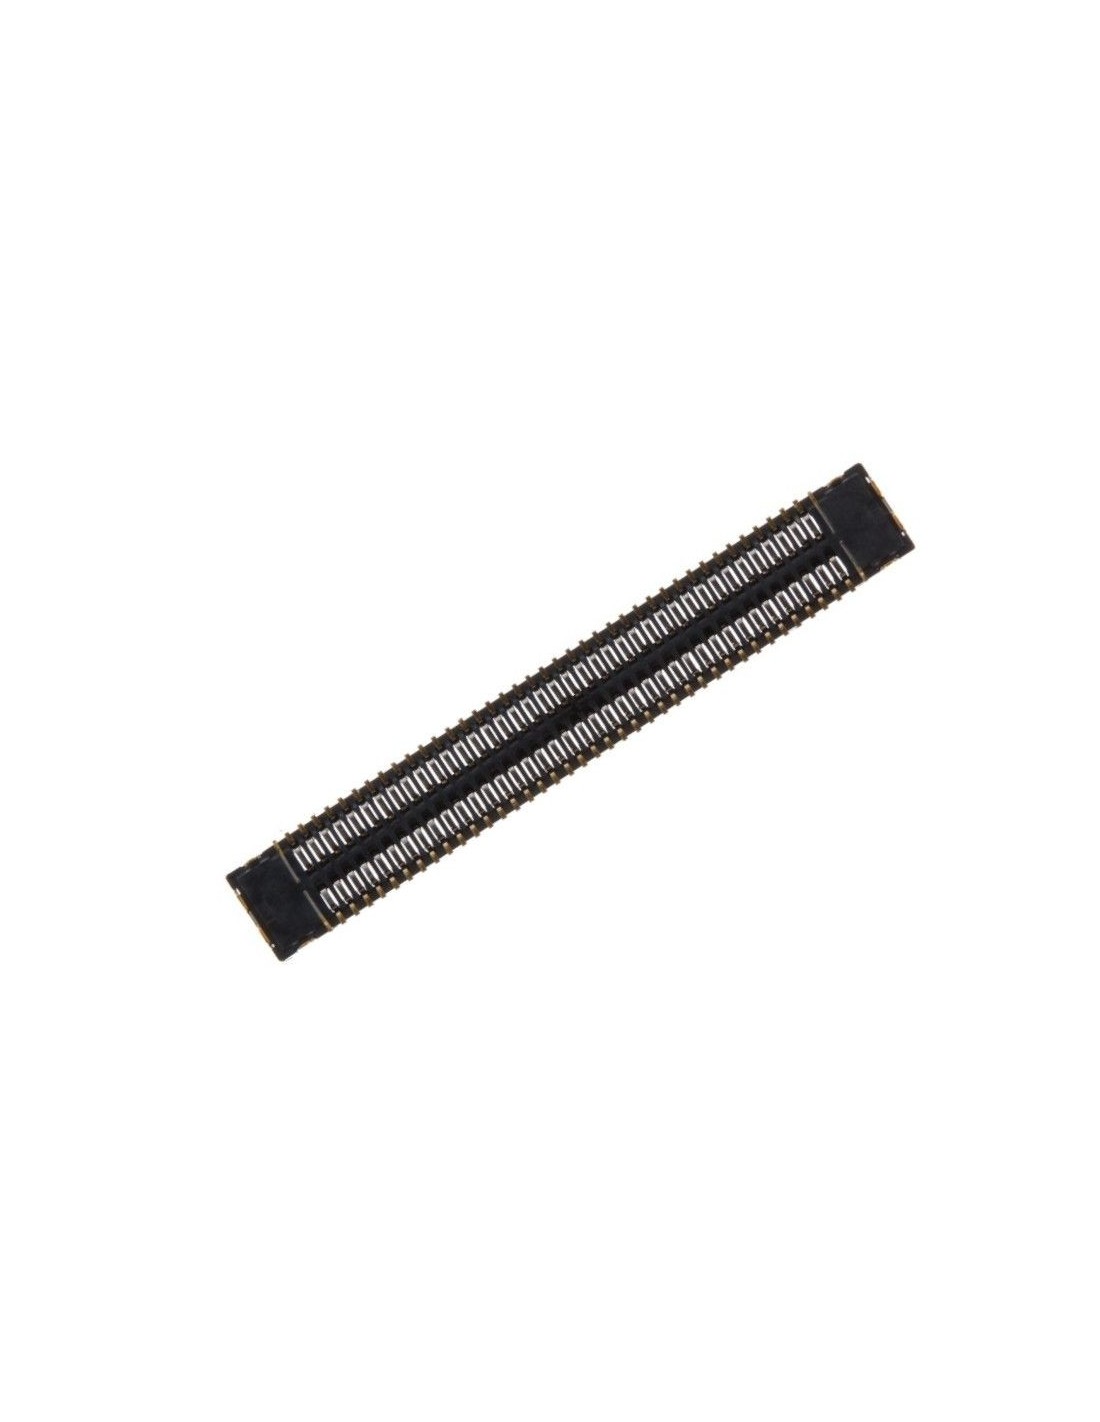 Samsung BTB konektor 2x39 pin